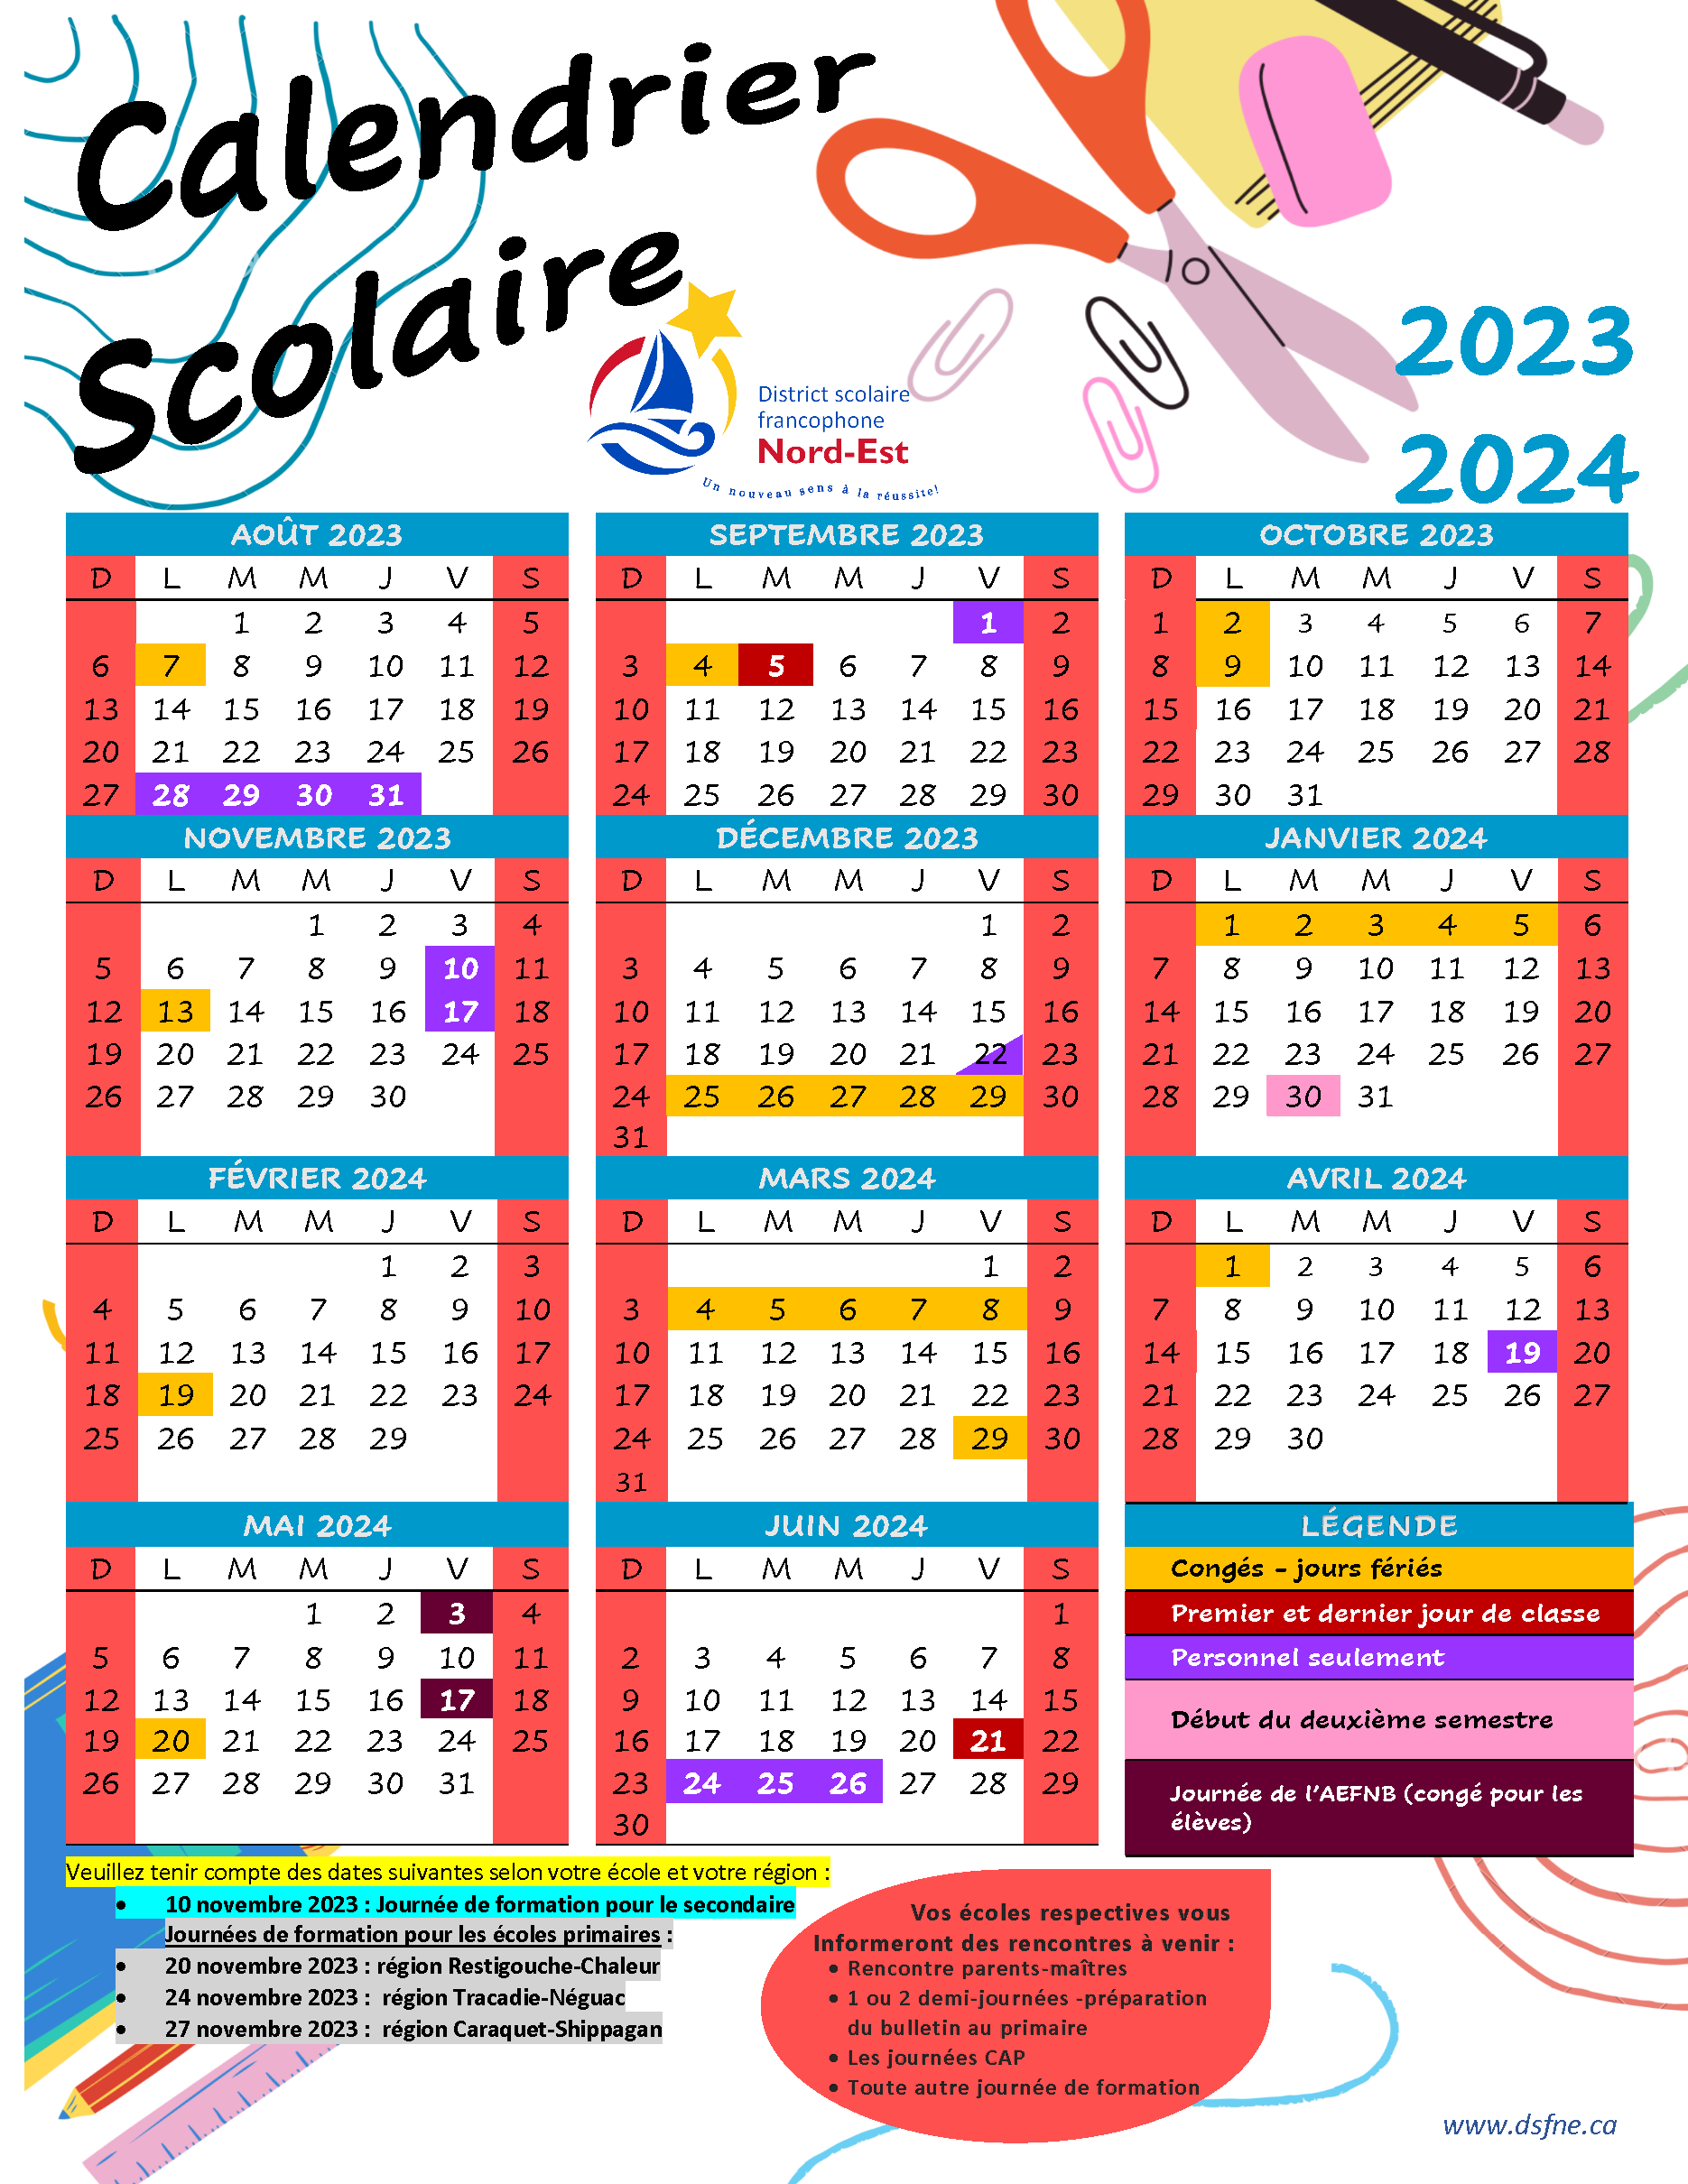 Calendrier scolaire 2023-2024 - École de foresterie de Duchesnay